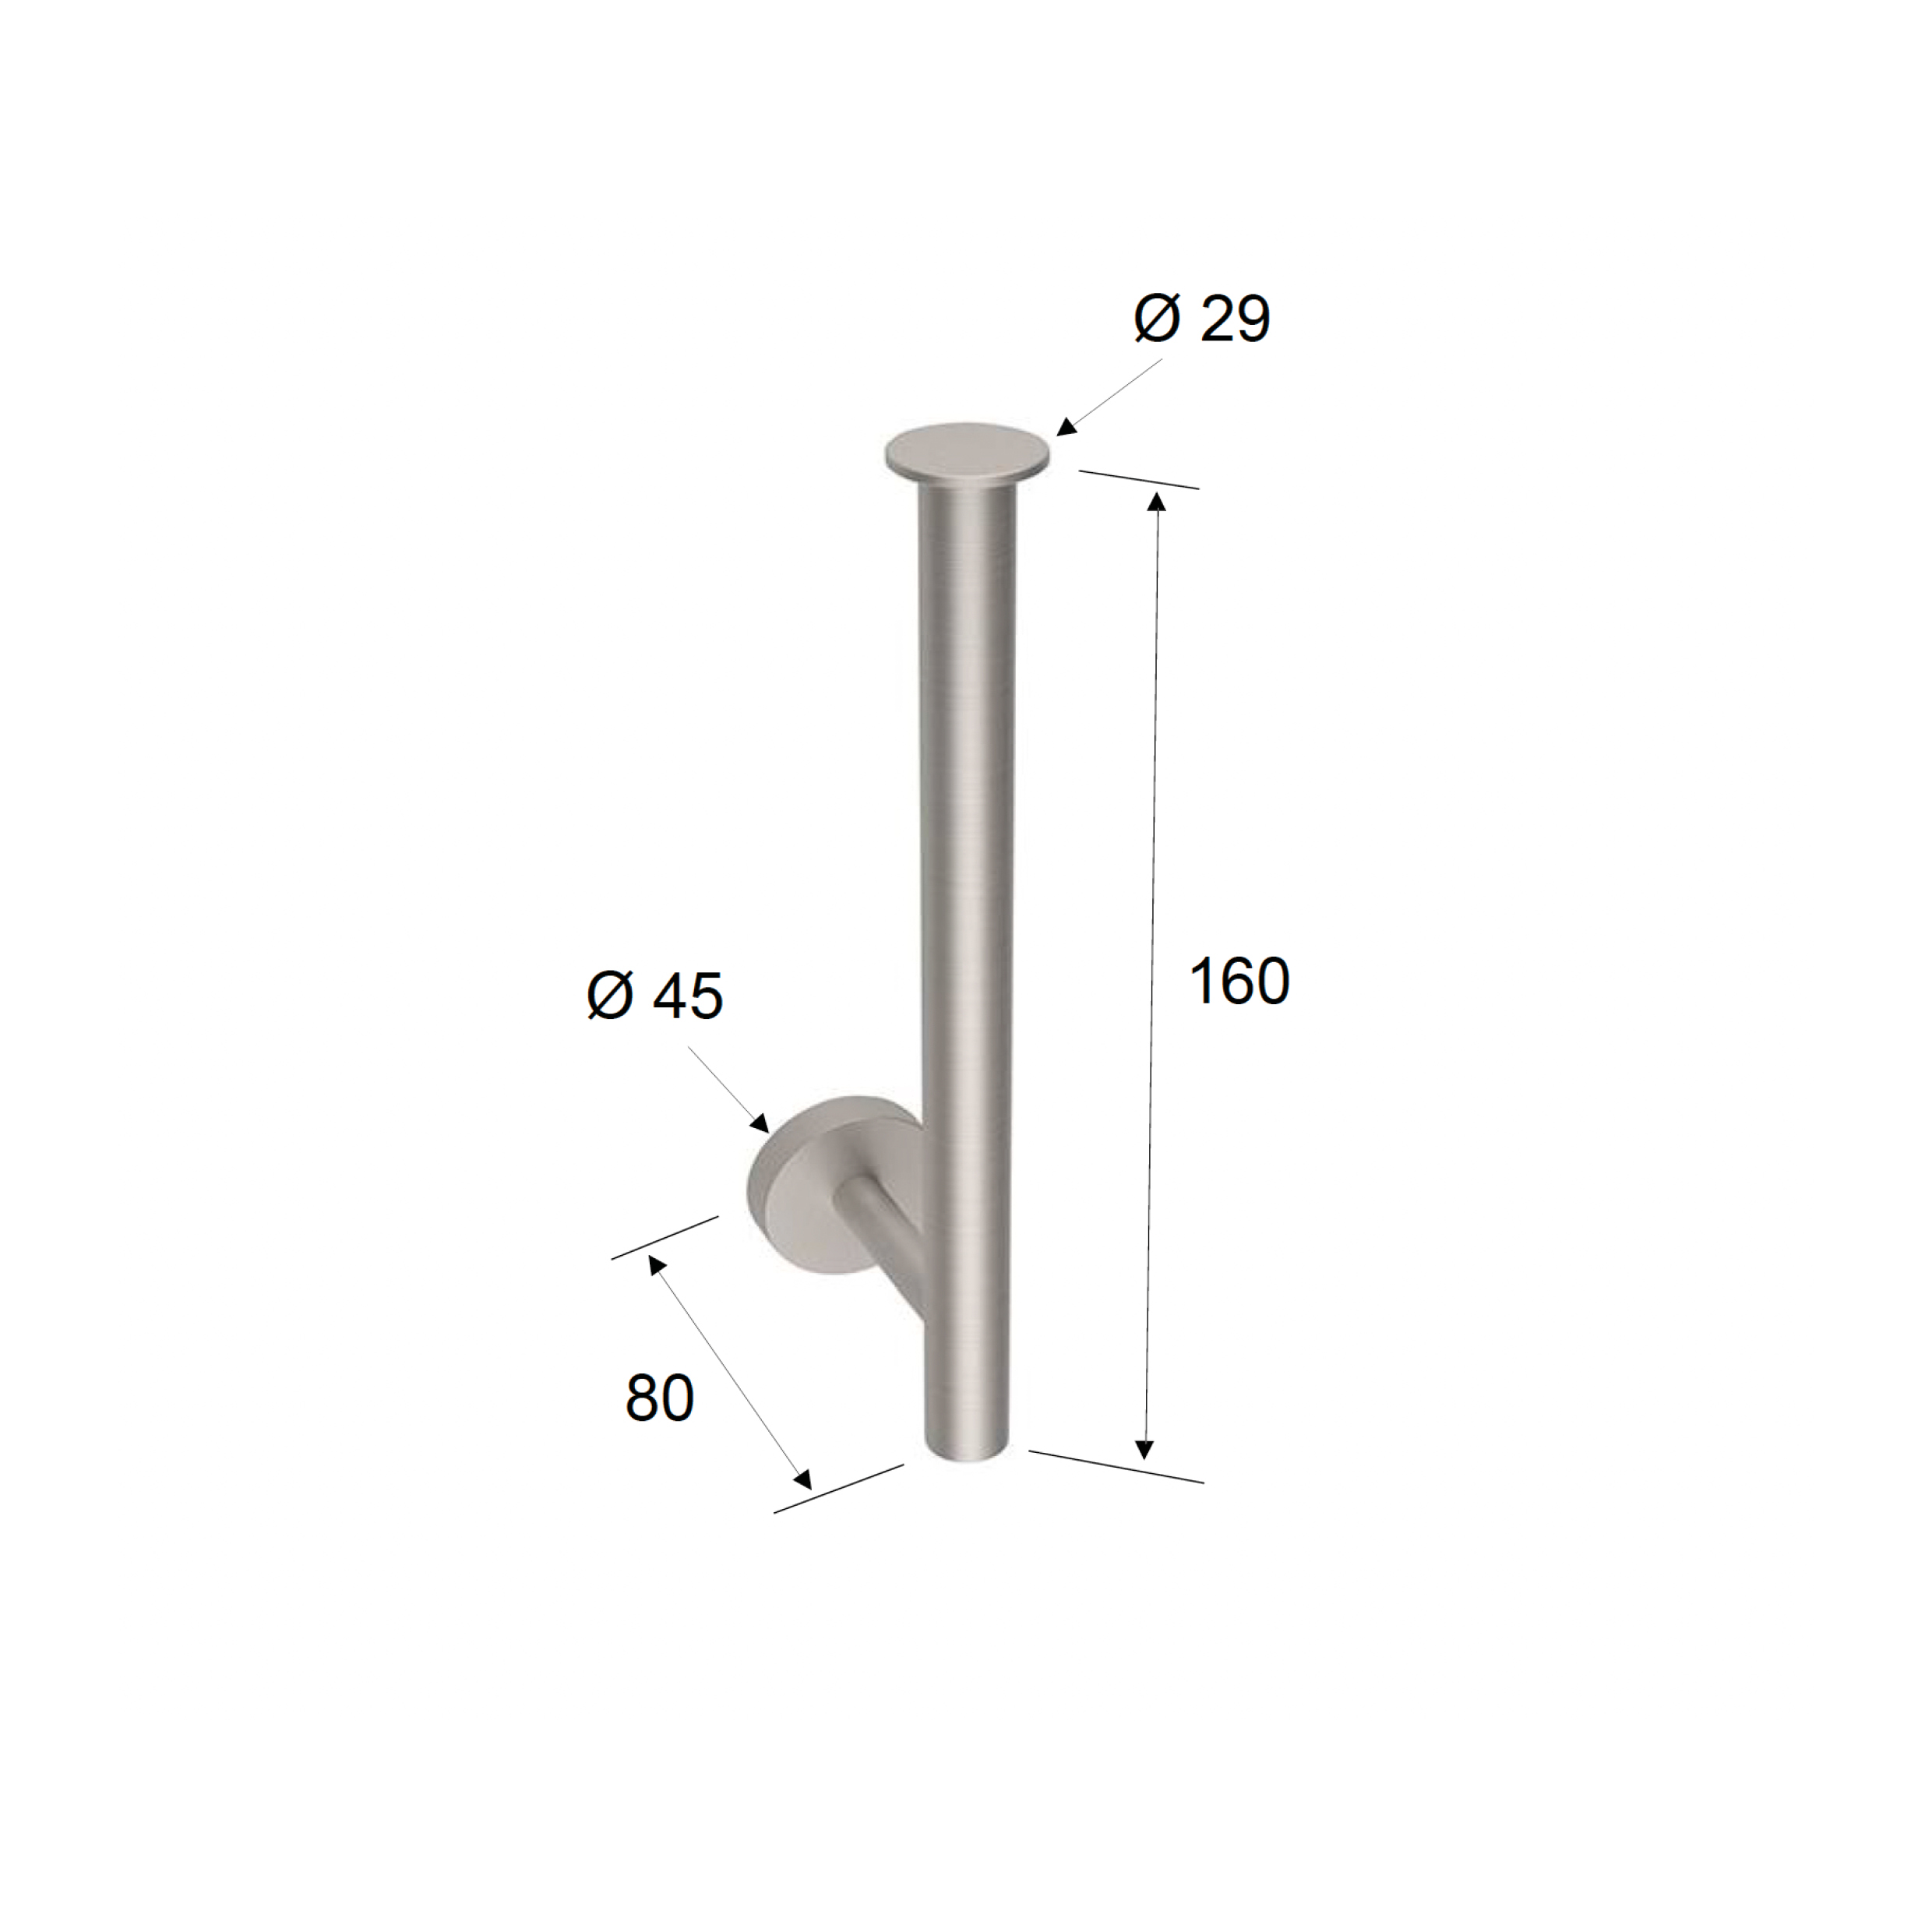 produkte-daniel-rubinetterie-papierrollenhalter-aus-edelstahl-senkrecht-wandmontage-tokyo-steel-aksstxprr920-technische-zeichnung